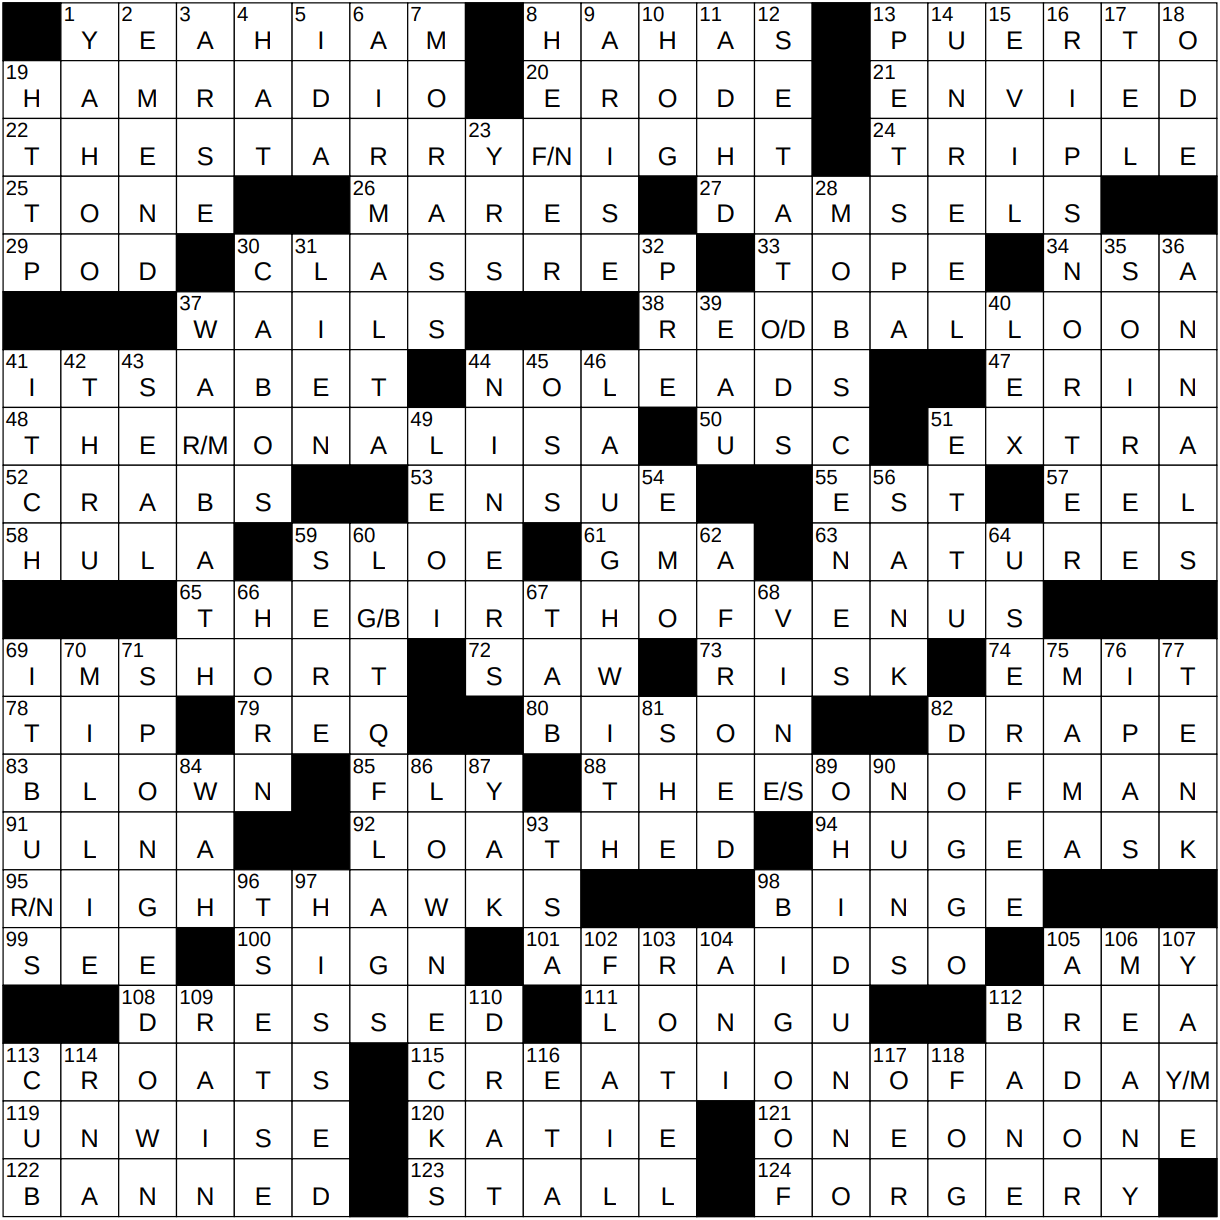 040223 NY Times Crossword 2 Apr 23, Sunday